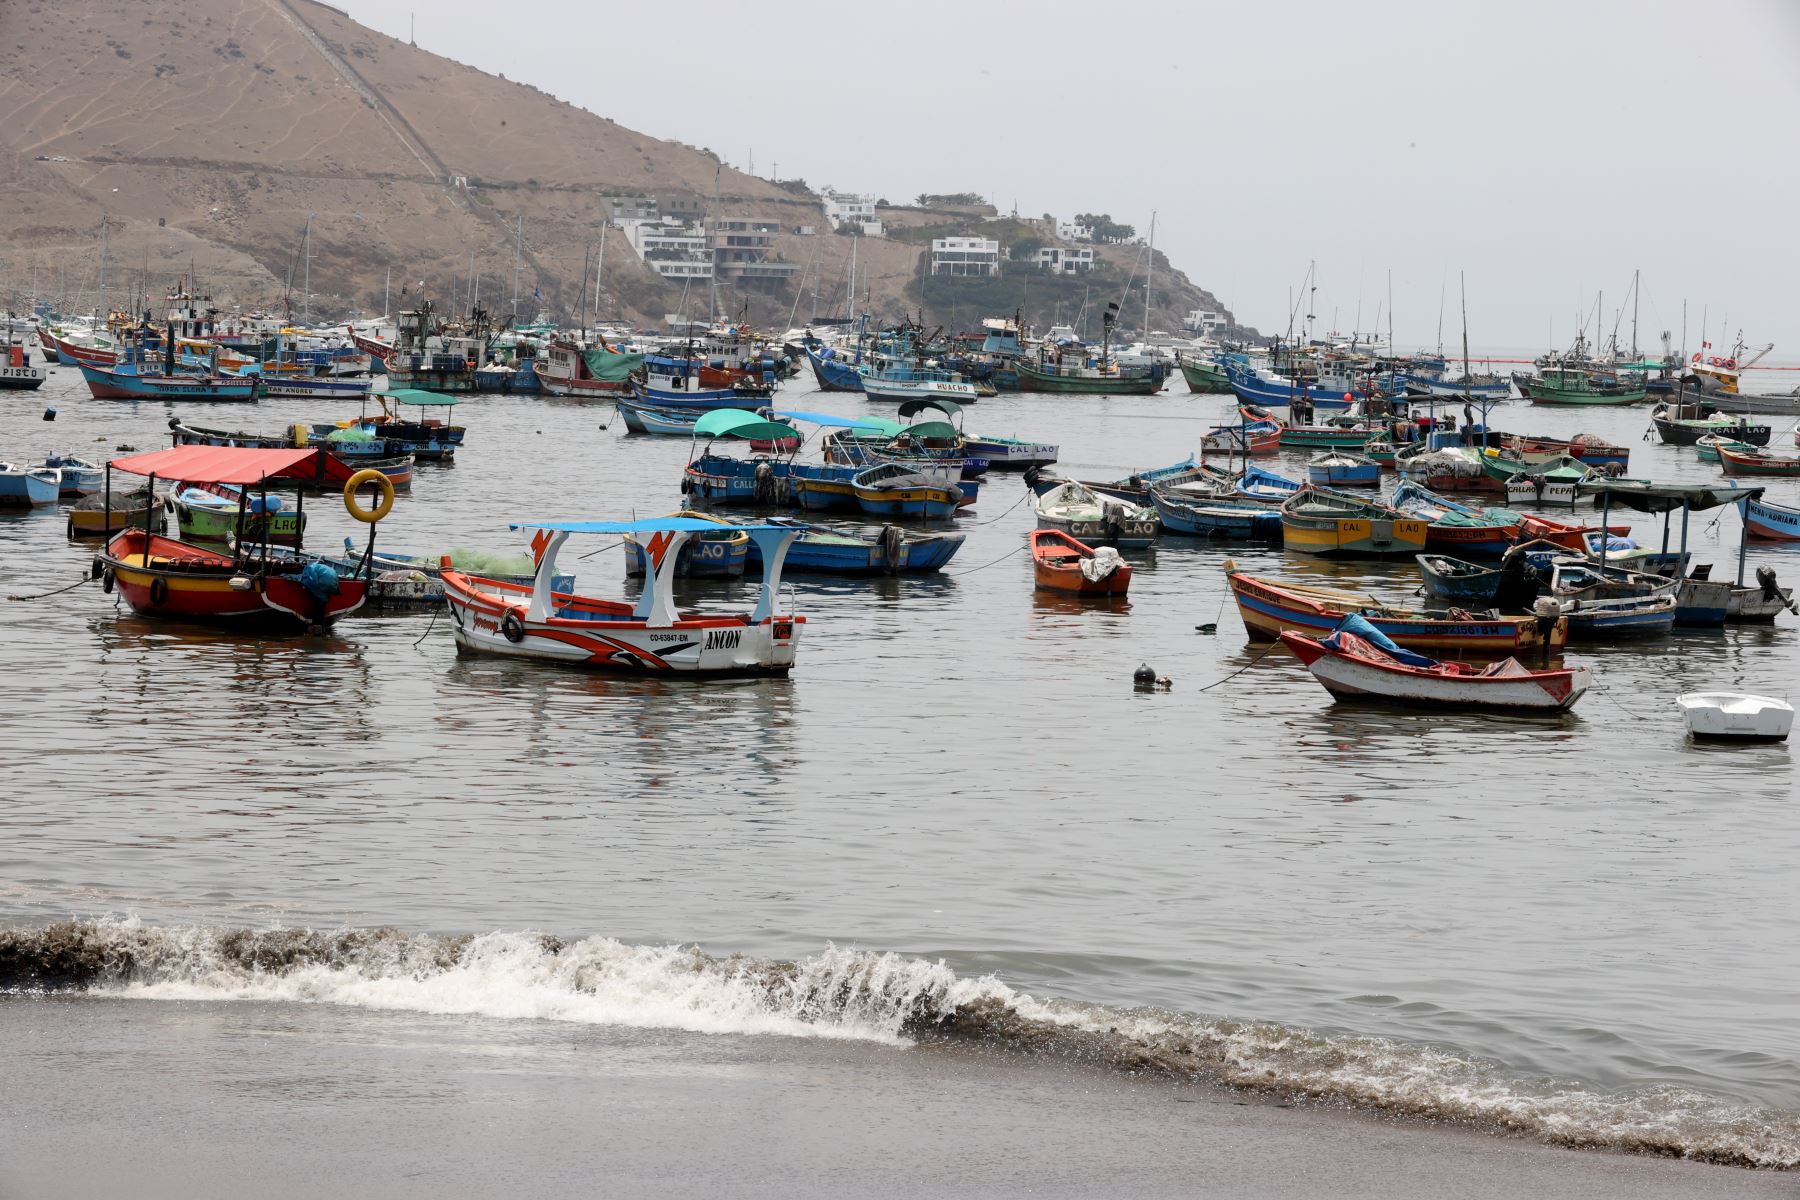 Una gran cantidad de lanchas pesqueras continúan varadas en la playa Ancón, debido al derrame de petróleo ocurrido el sábado 15 de enero ocasionado por la empresa Repsol y que hasta ahora ha contaminado varias playas del litoral peruano. Foto: ANDINA/Vidal Tarqui